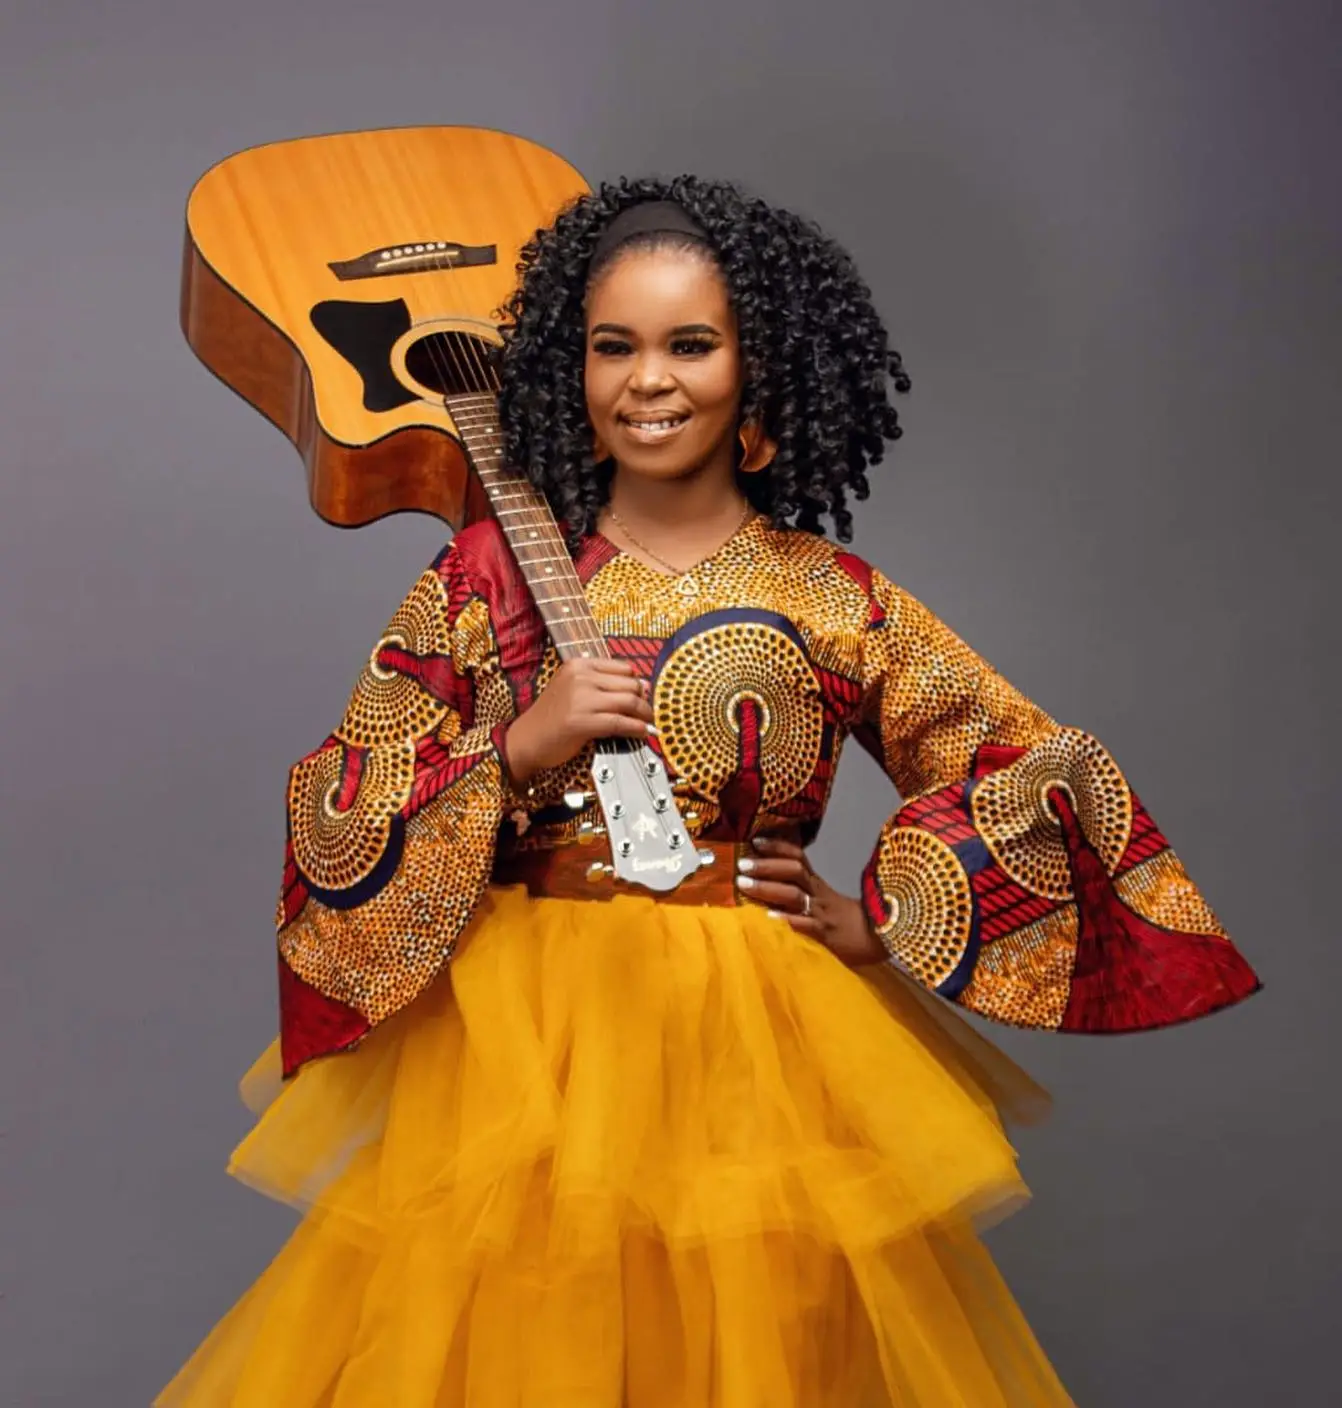 Morreu a cantora afro-pop sul-africana Zahara - SIC Notícias